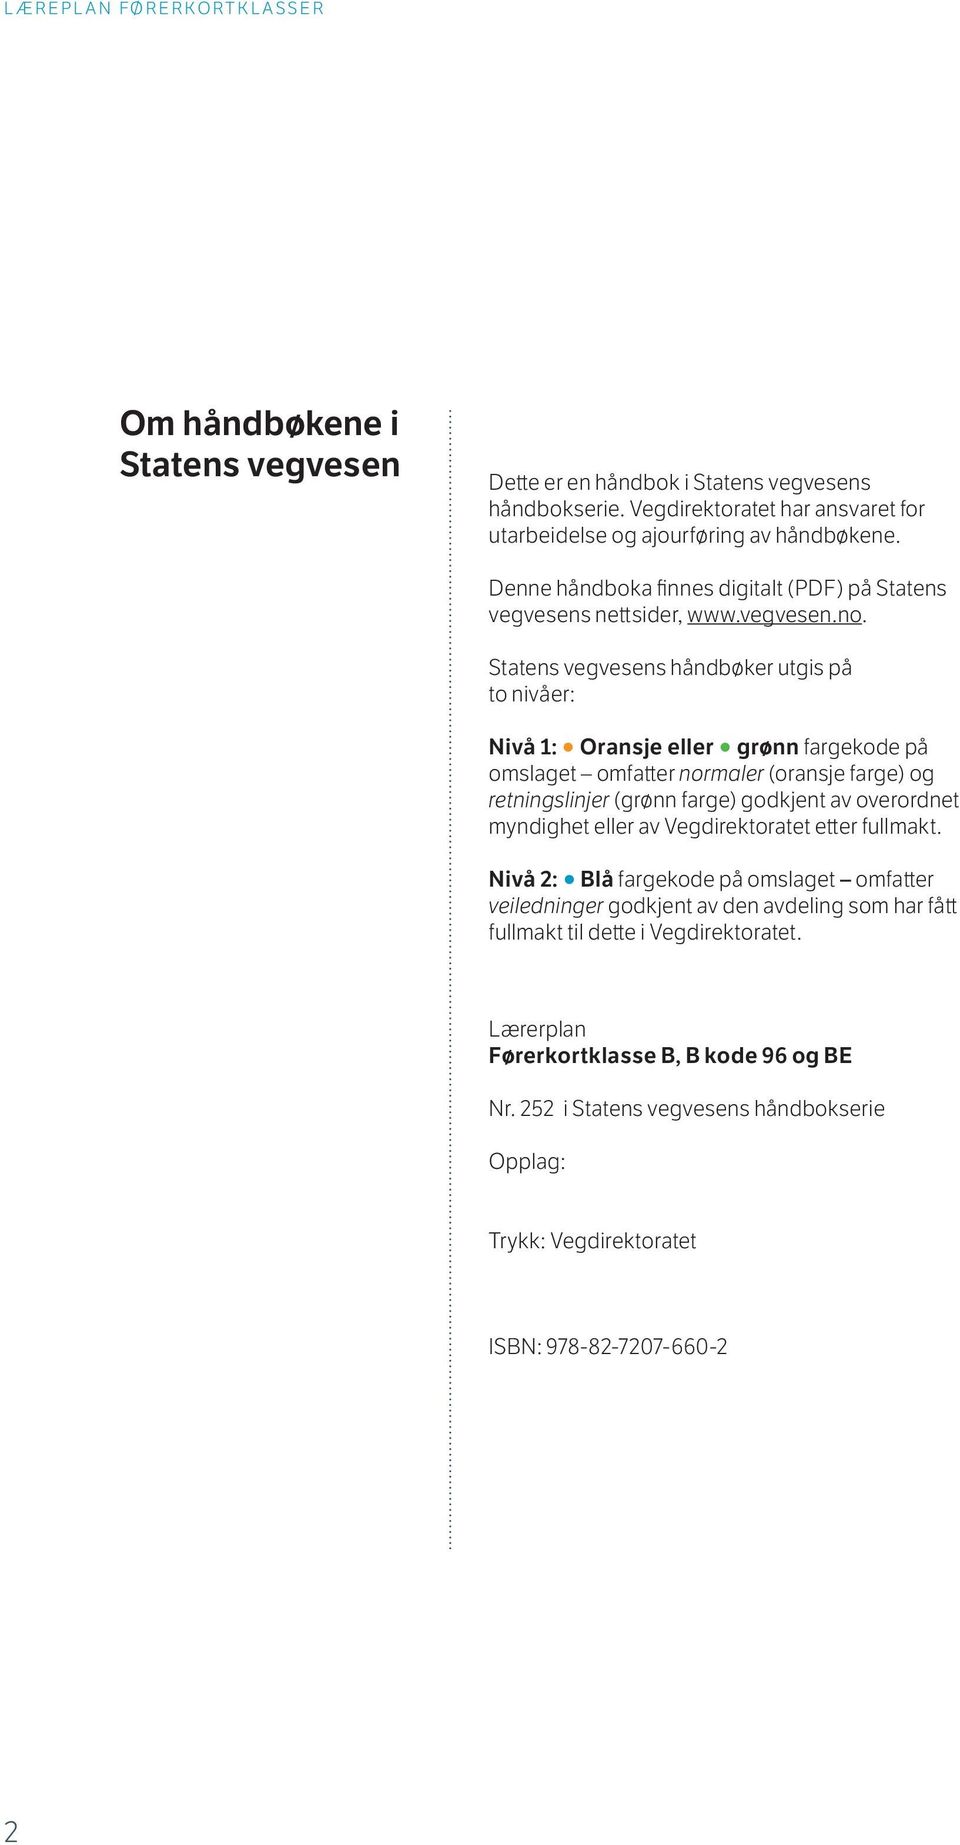 Statens vegvesens håndbøker utgis på to nivåer: Nivå 1: Oransje eller grønn fargekode på omslaget omfatter normaler (oransje farge) og retningslinjer (grønn farge) godkjent av overordnet